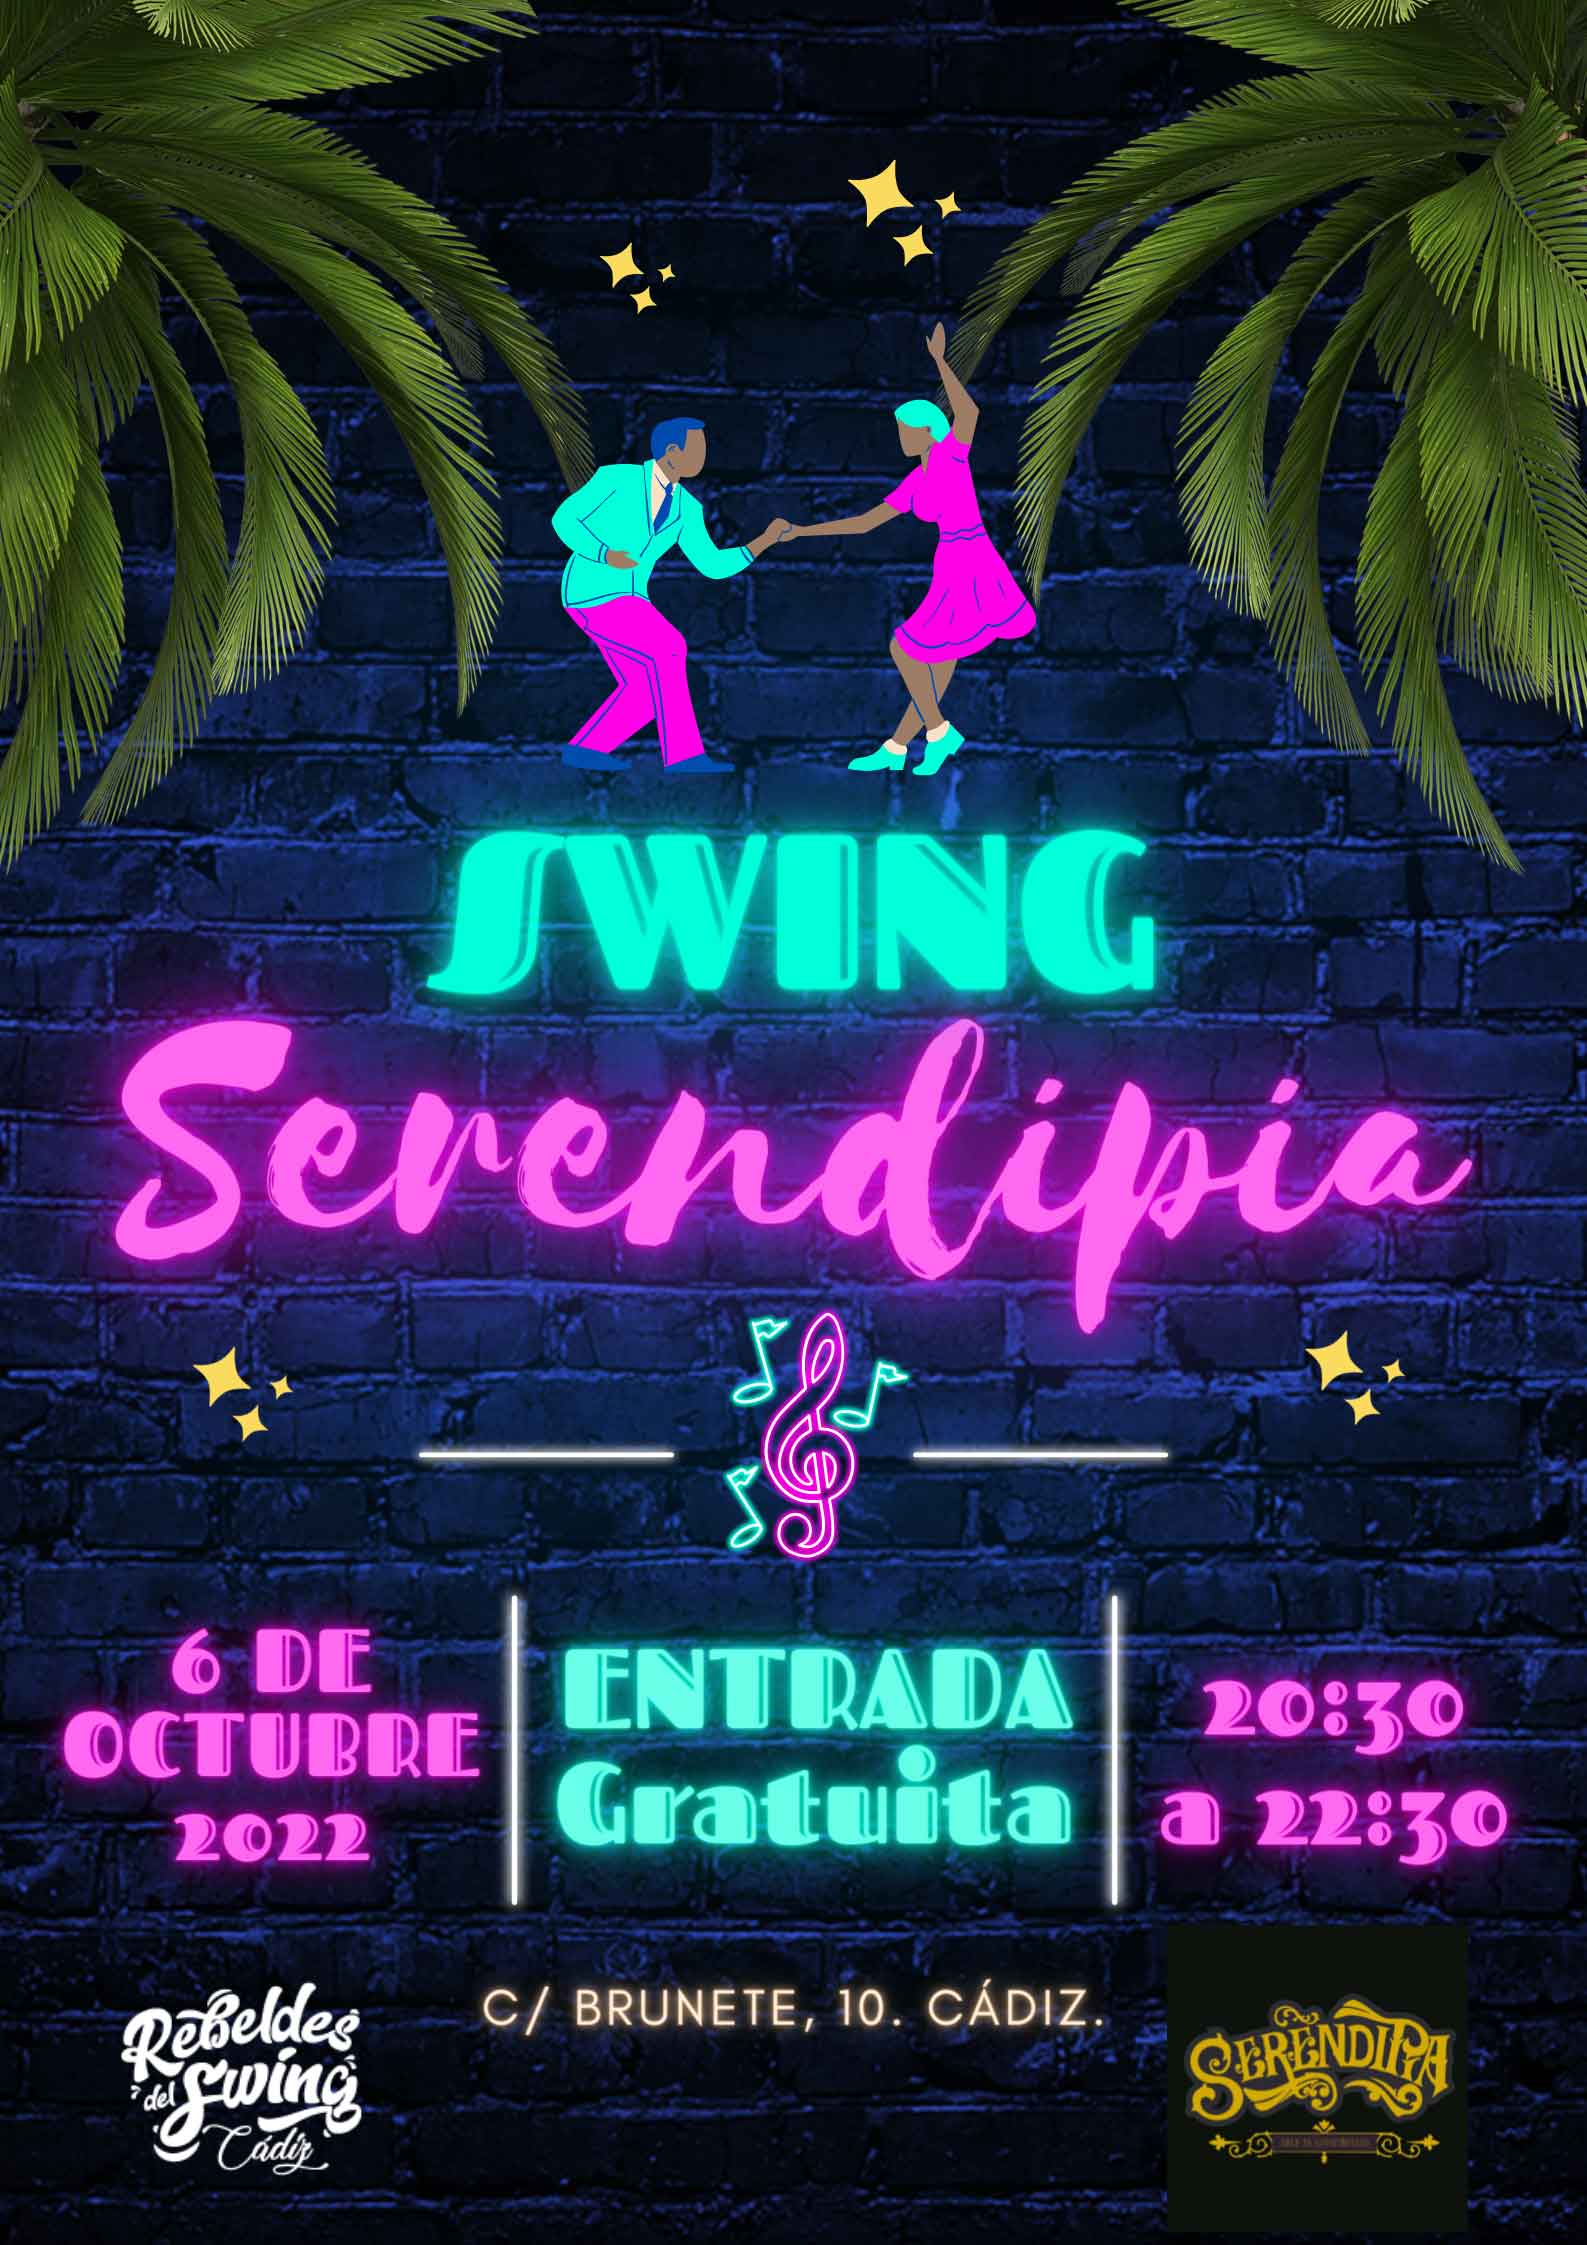 Jueves de Swing en Serendipia